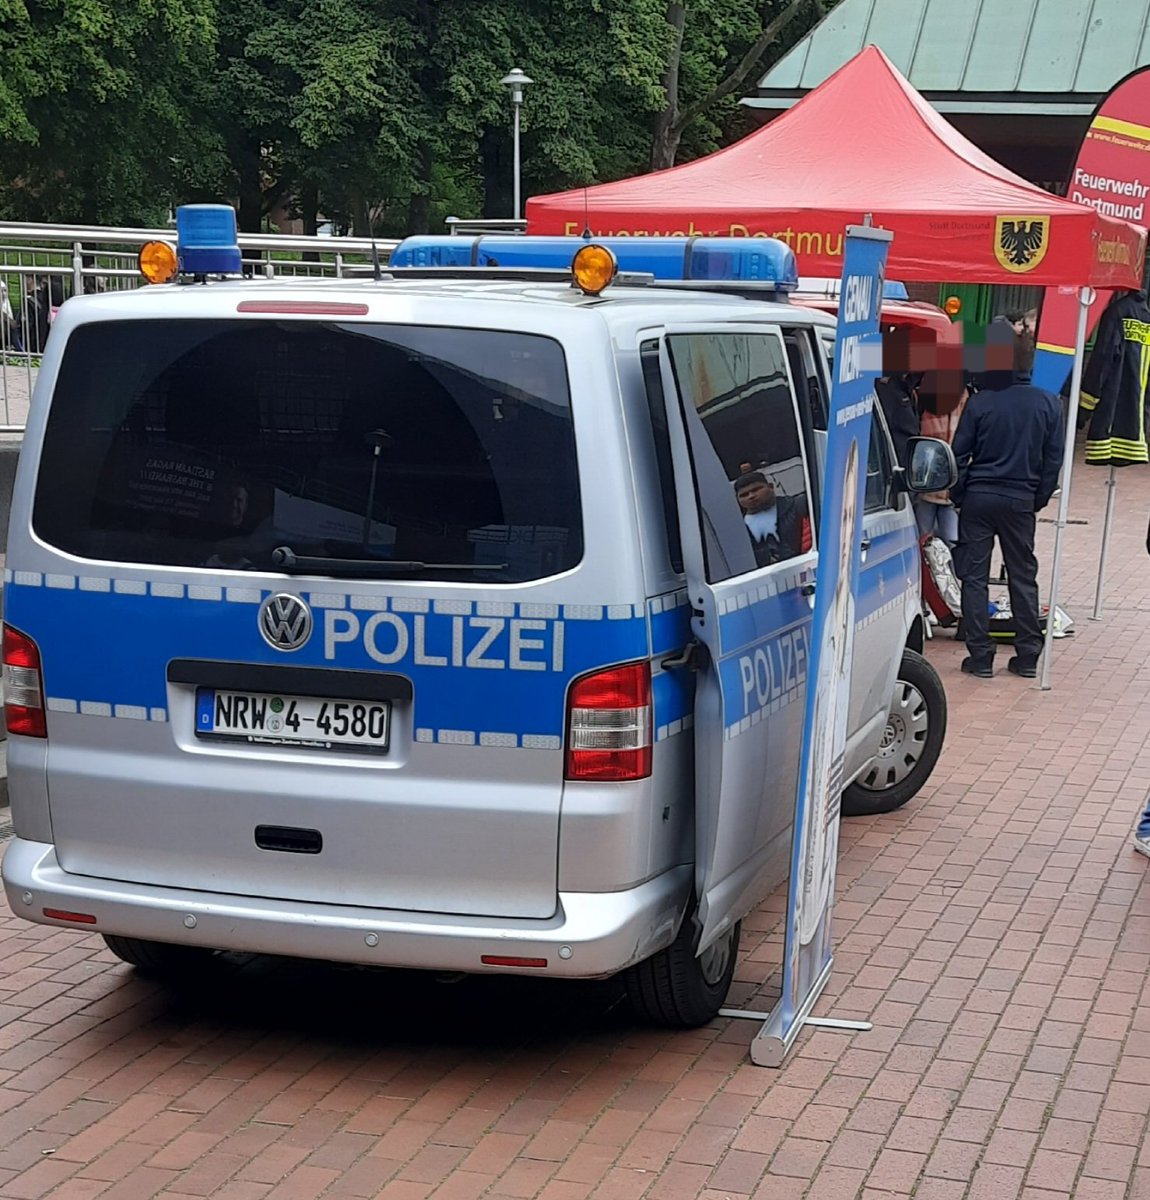 An der U-Bahn Leopoldstr., am Keuninghaus in #Dortmund, machen die Cops Werbung für ihre Mördertruppe. Nicht sonderlich viel Interesse von den Schülern.

Haben bestimmt Bock paar Fragen zu beantworten.
#justice4mouhamed
#copaganda_do